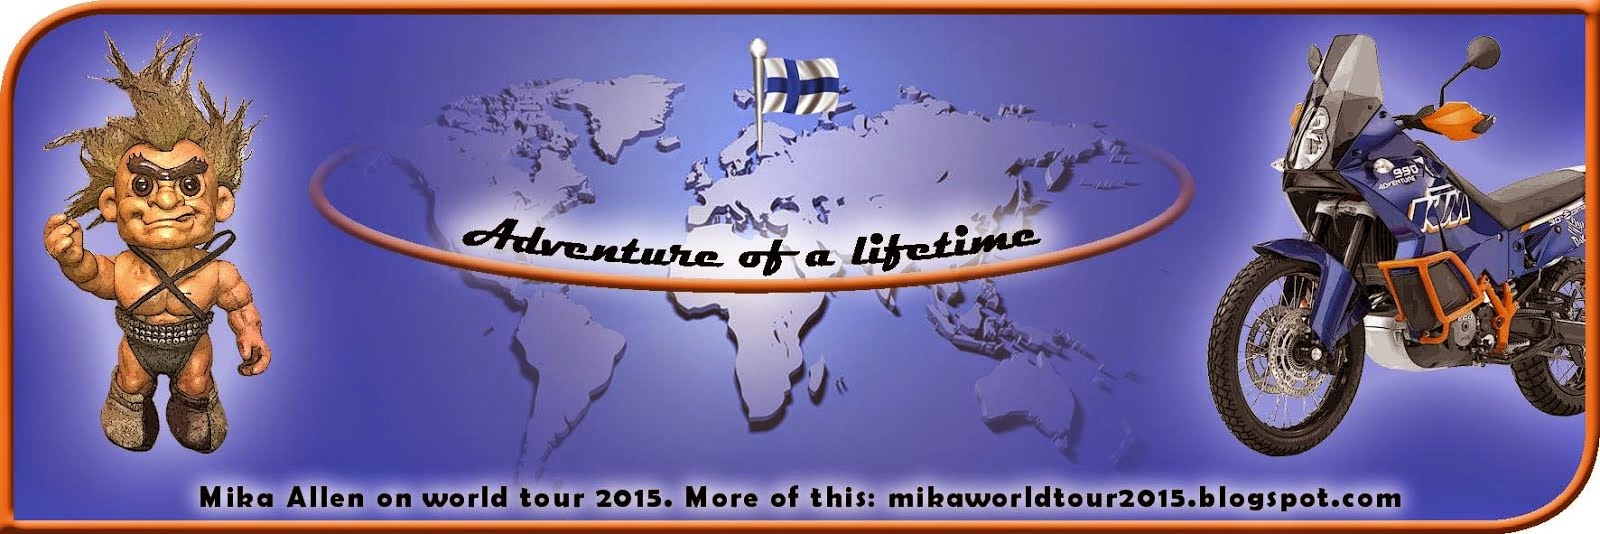 World tour 2015